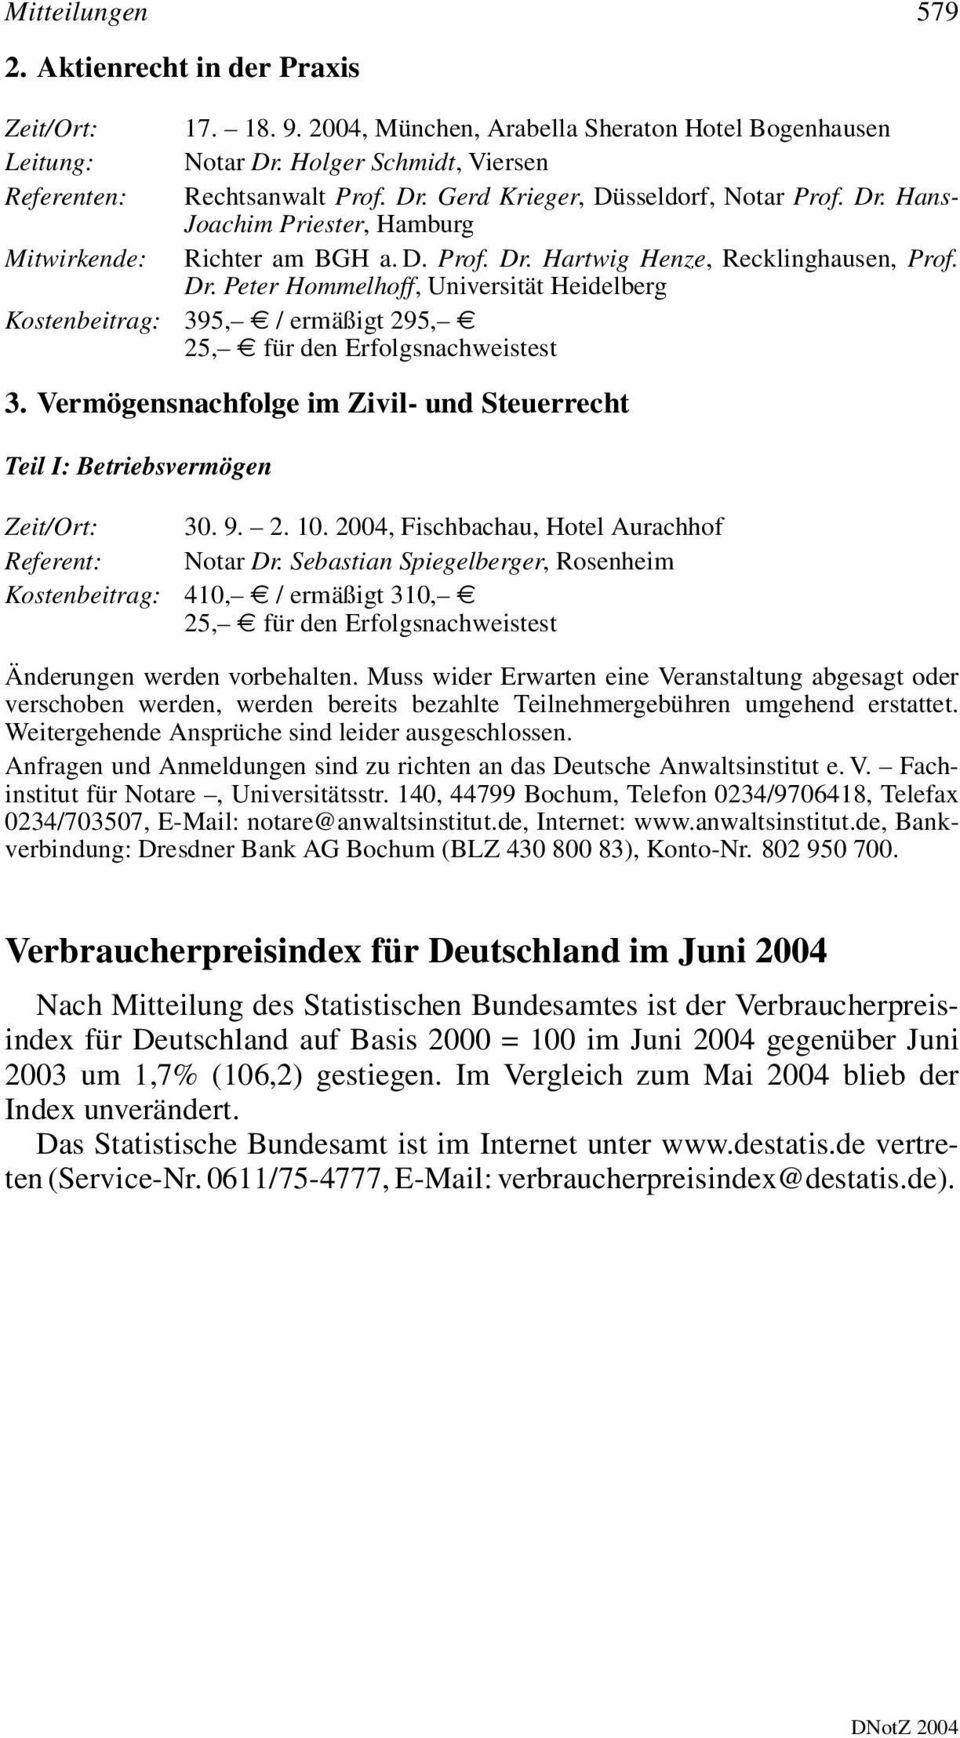 Vermögensnachfolge im Zivil- und Steuerrecht Teil I: Betriebsvermögen Zeit/Ort: Referent: Kostenbeitrag: 30. 9. 2. 10. 2004, Fischbachau, Hotel Aurachhof Notar Dr.